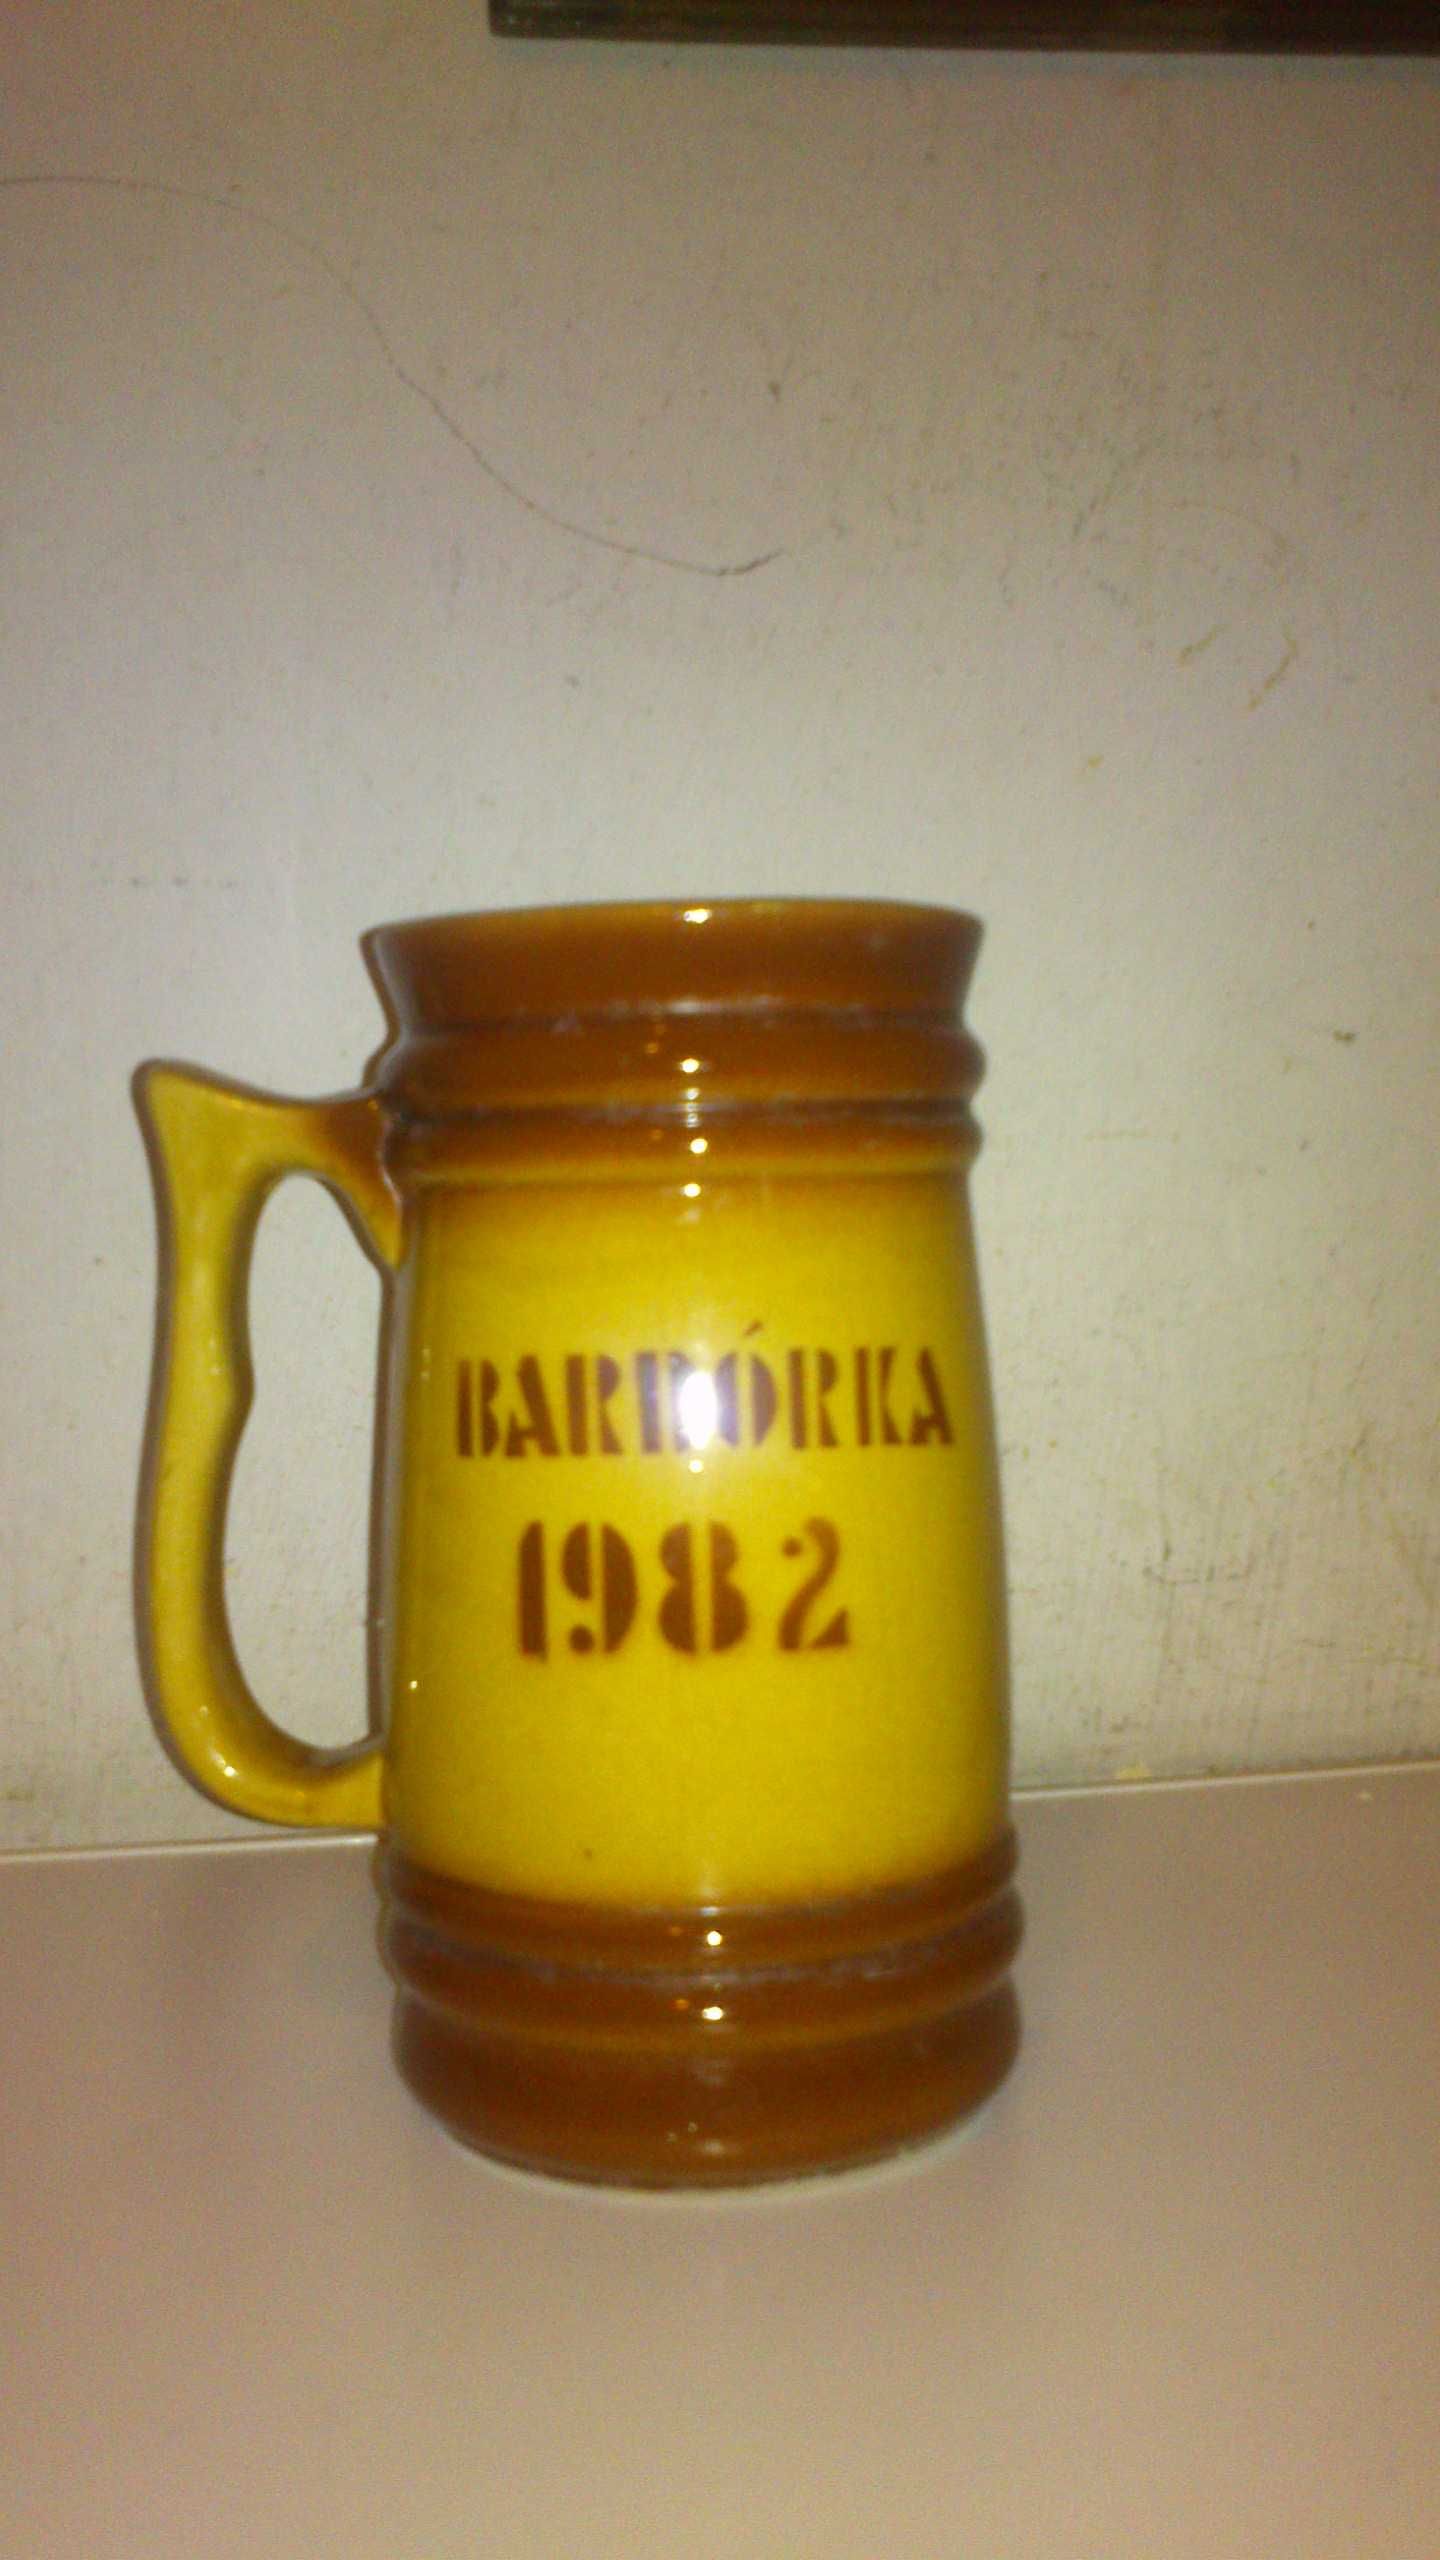 Kufel barbórkowy ,ceramiczny beżowo- brązowy 1982r Bolesławiec.